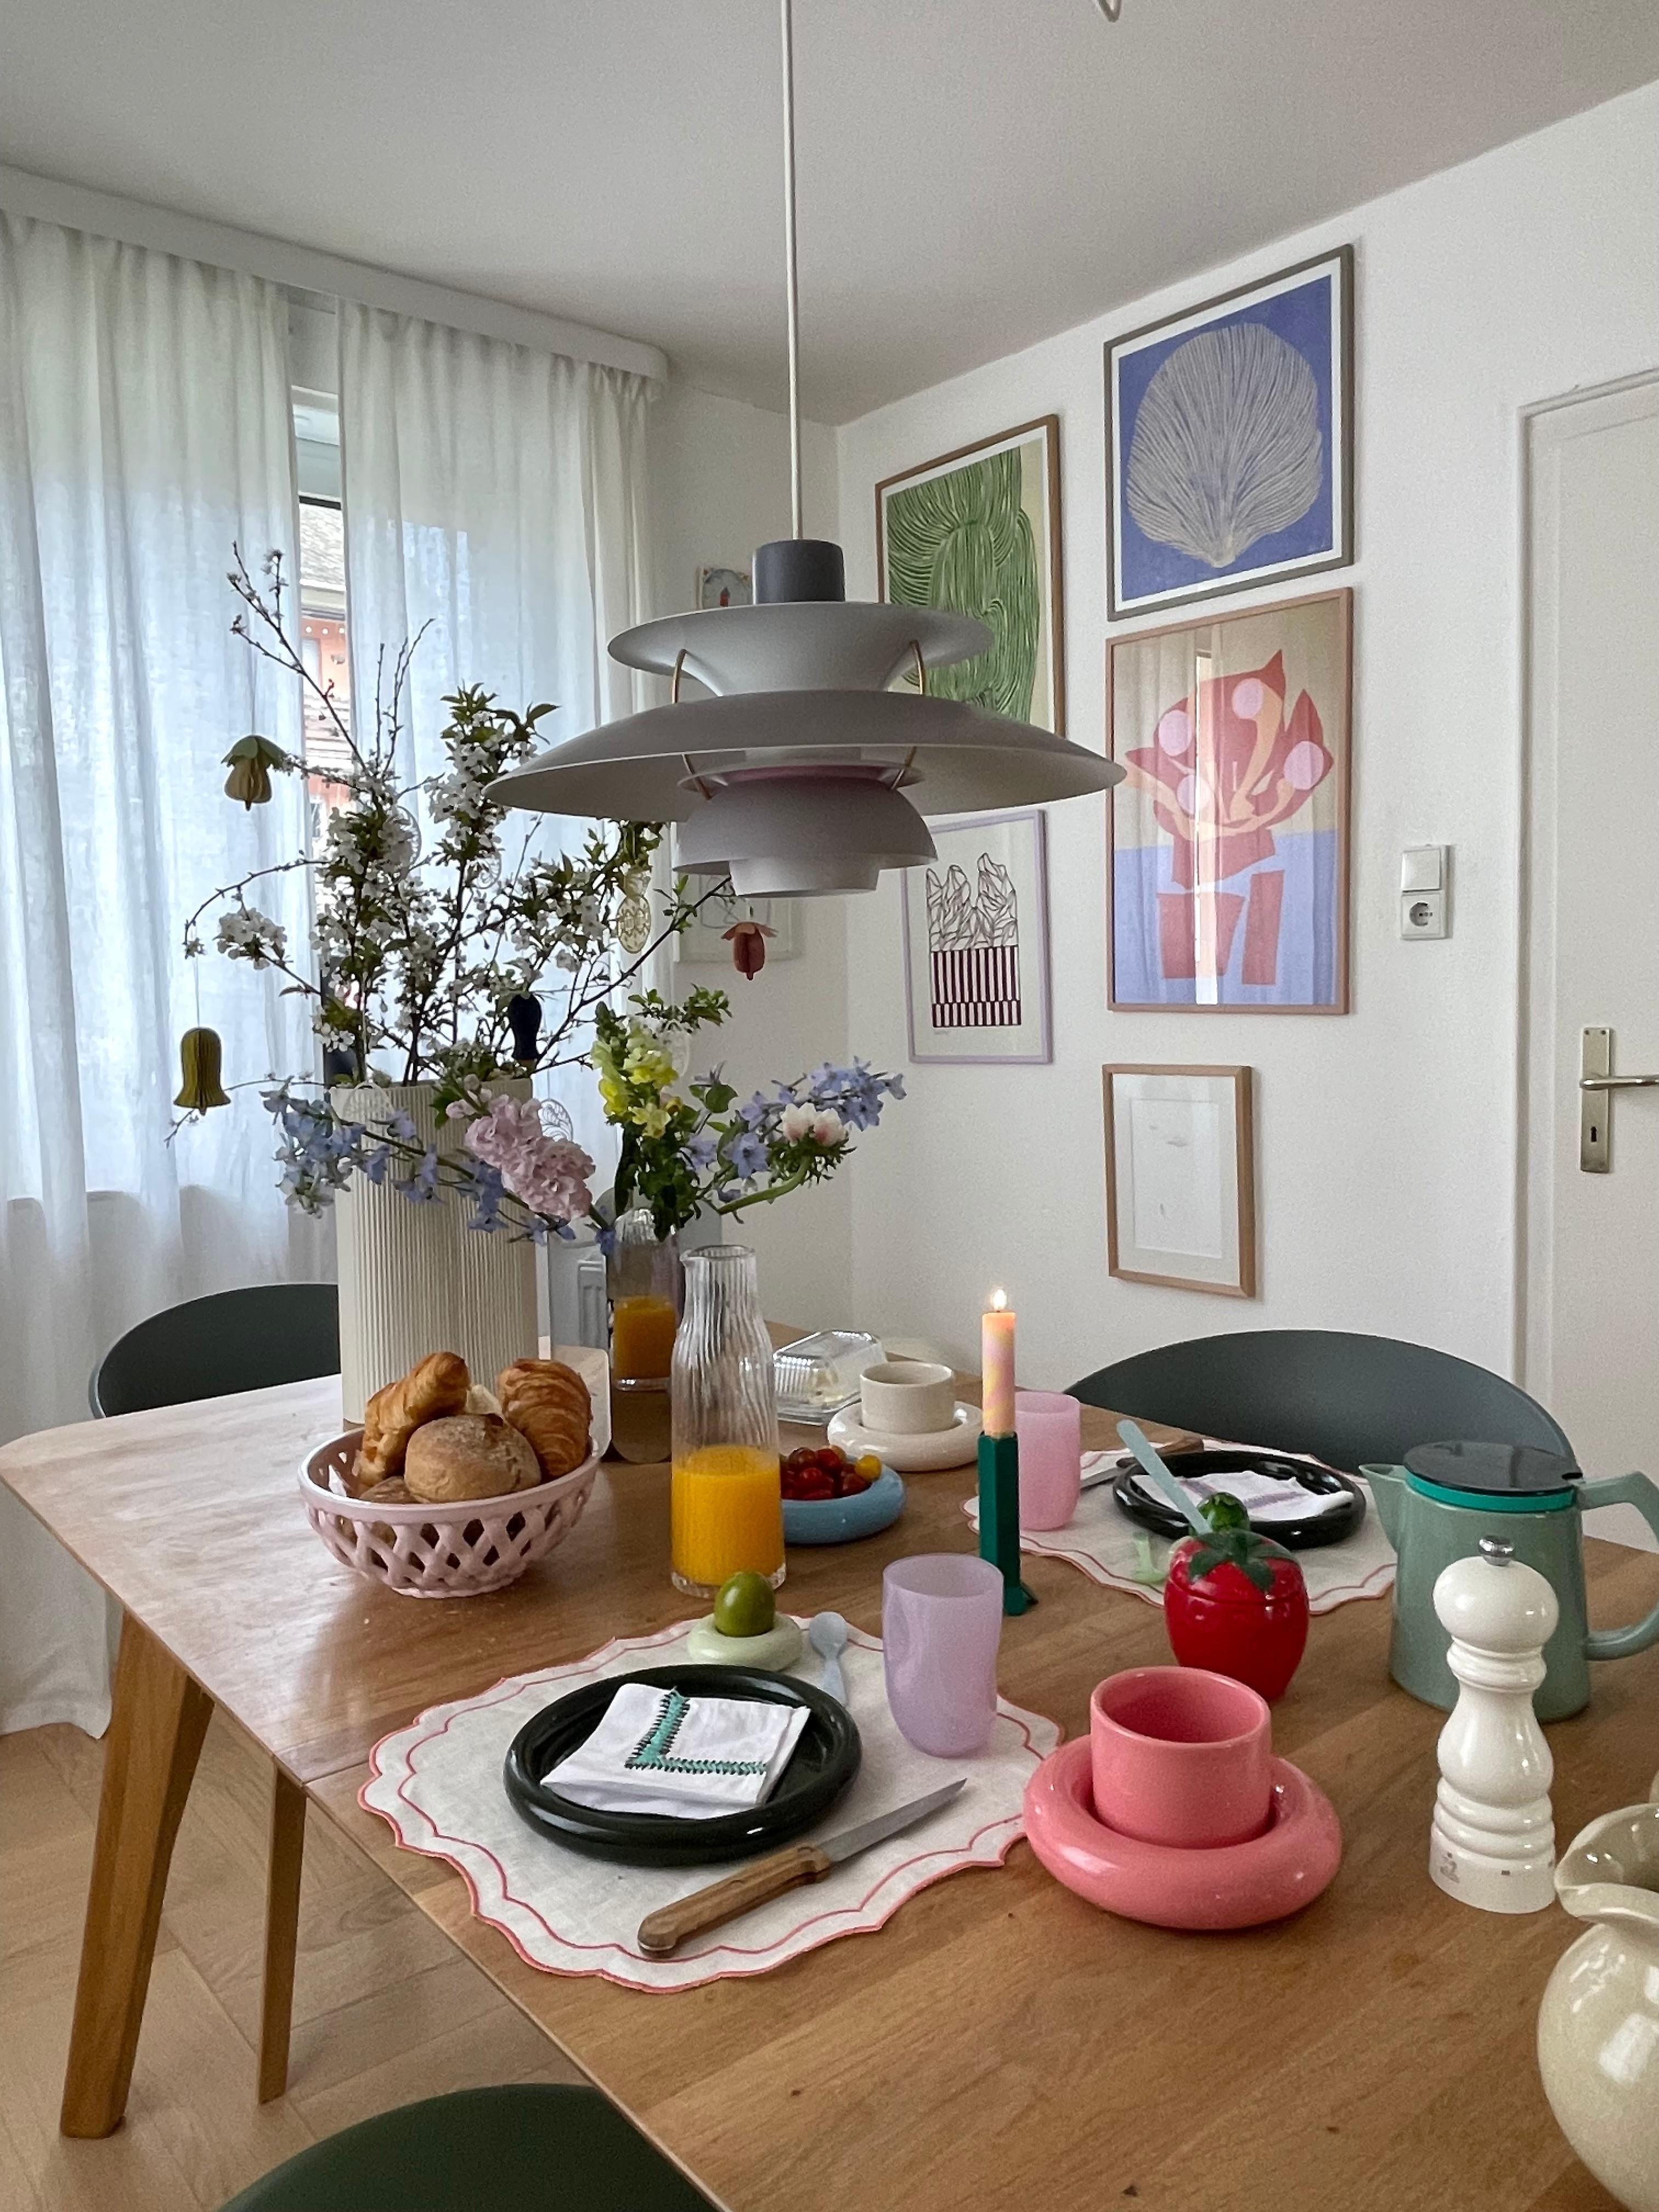 #living #home #interior #interiør #altbauliebe #wohnen #skandinavisch #couchstyle #esszimmer #esstisch #blumen #skandi #keramik #deko #intetior